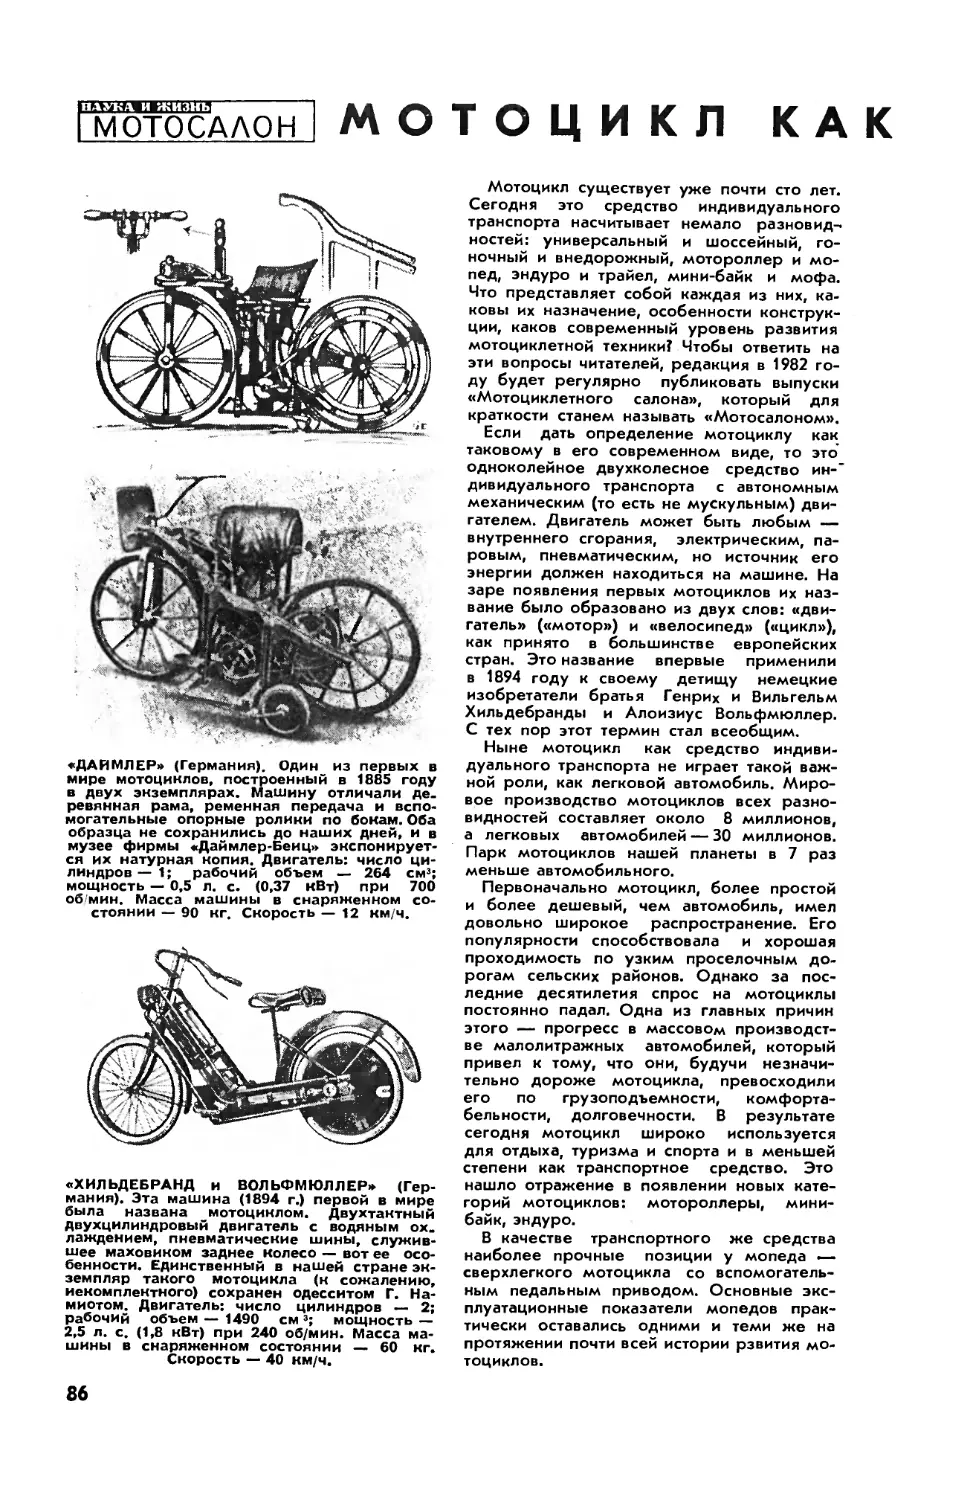 Л. ШУГУРОВ — Мотоцикл как таковой